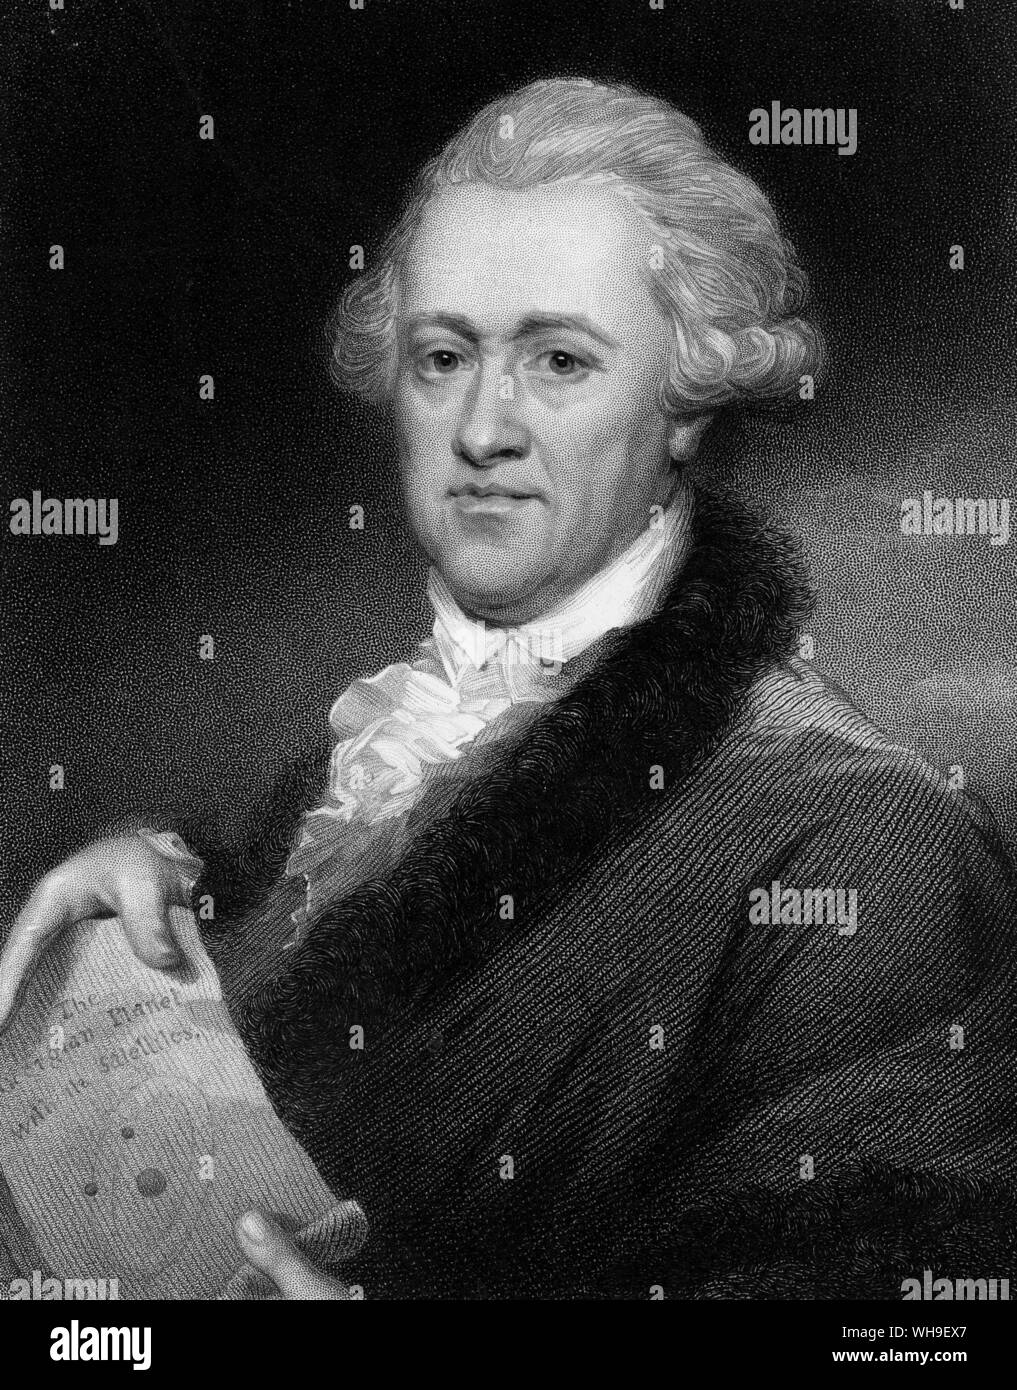 William Herschel (1738-1822). L'astronome anglais d'origine allemande. Hew était un télescope qualifiés bouilloire et pionnier de l'étude des étoiles et des nébuleuses. Il a découvert la planète Uranus en 1781. Banque D'Images